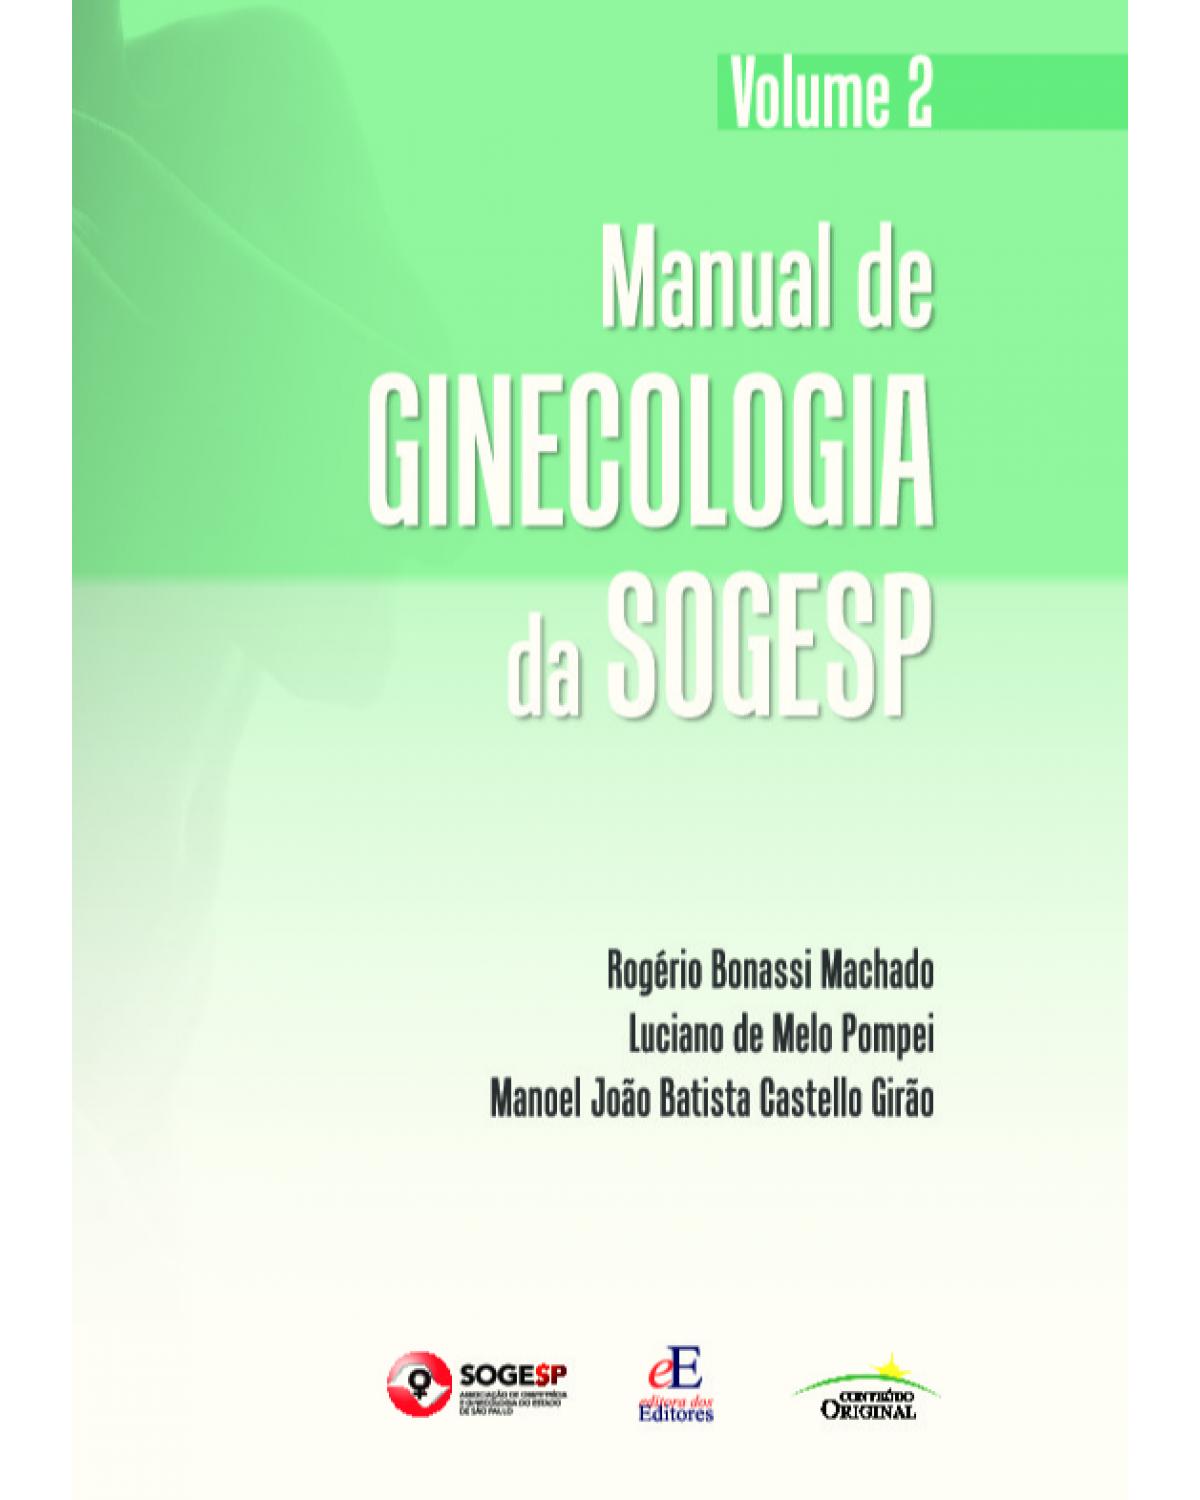 Manual de ginecologia da SOGESP - Volume 2: Volume 2 - 1ª Edição | 2021